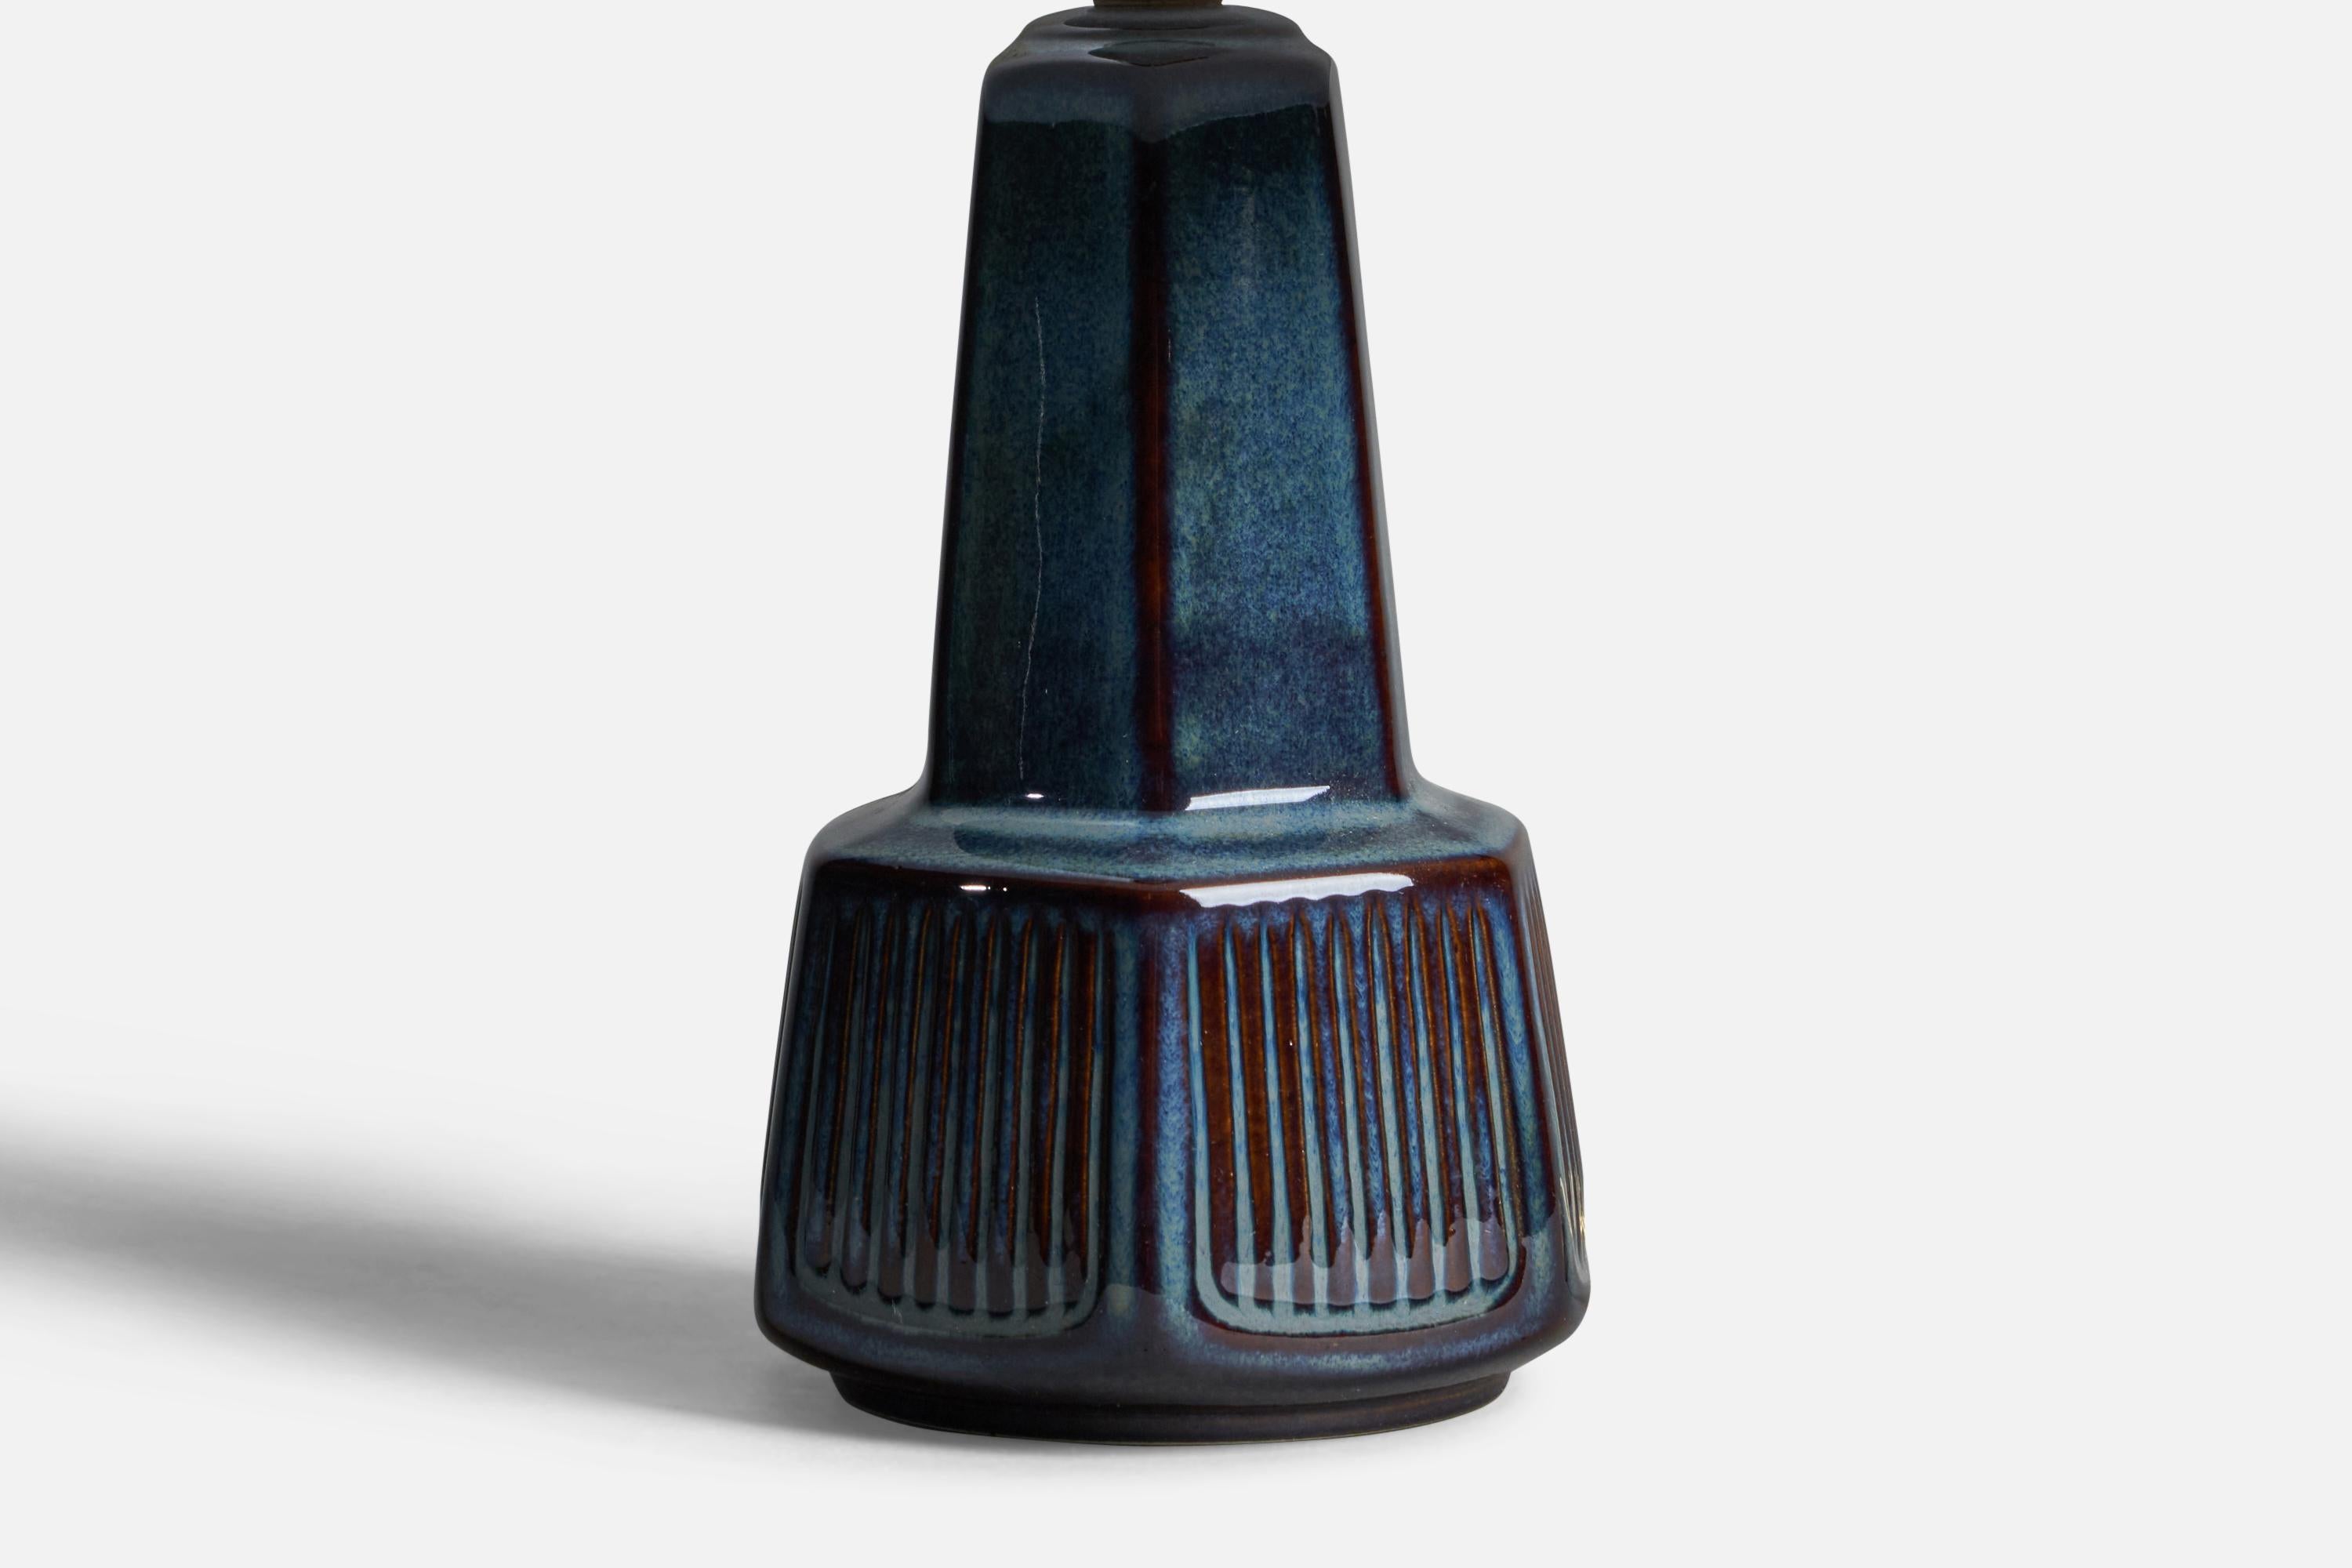 Tischlampe aus blau glasiertem Steingut, entworfen und hergestellt von Søholm, Bornholm, Dänemark, 1960er Jahre.

Abmessungen der Lampe (Zoll): 10